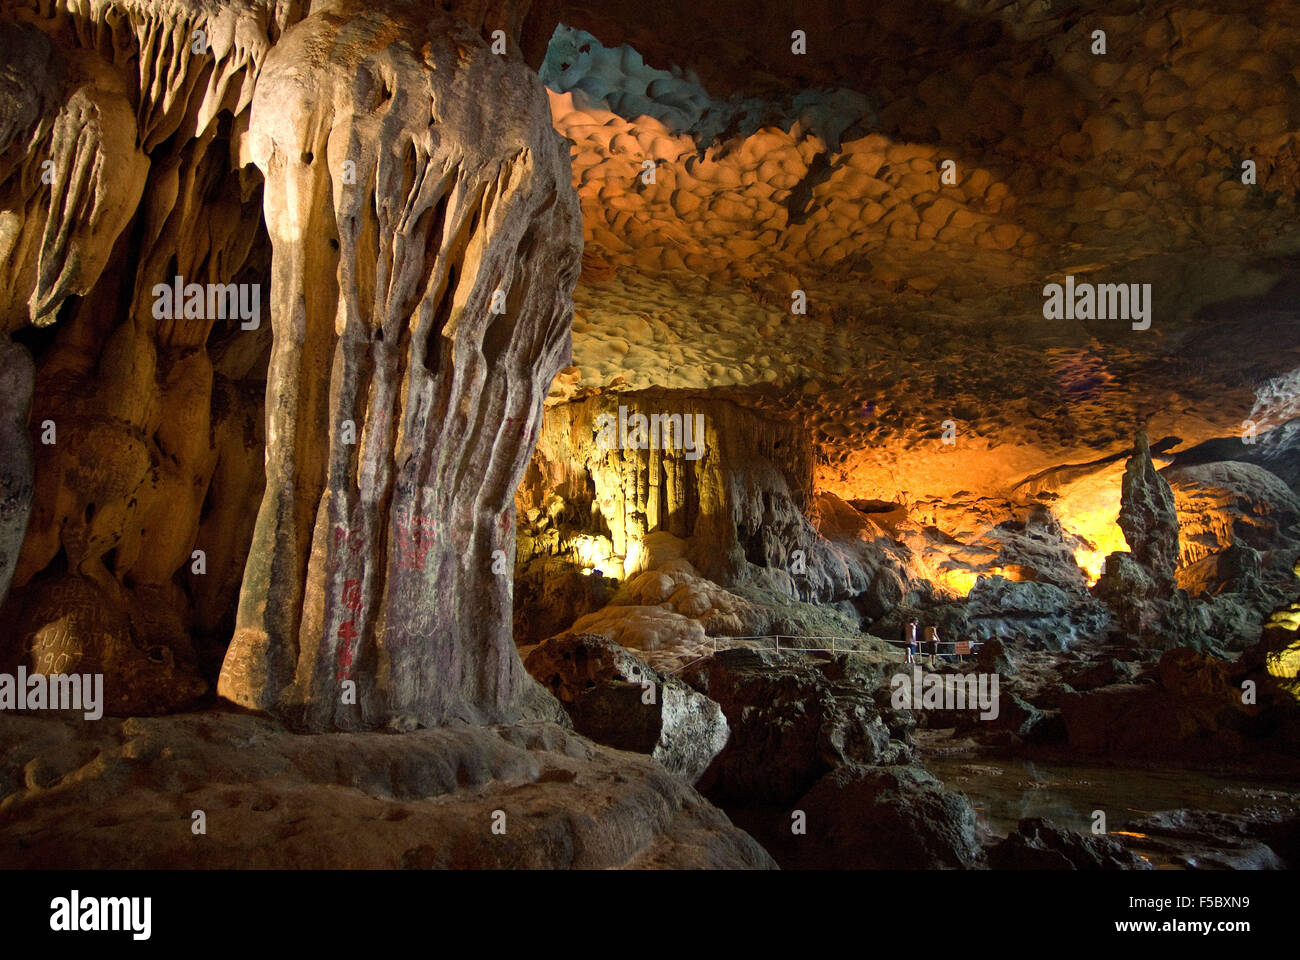 Hängen Sie die Sung Sot Grotte von Überraschungen, Tropfsteinhöhle in Halong Bucht, Vietnam, Südostasien. Hängen Sie Sung Sot oder überraschen Sie Grotte - Bo Stockfoto